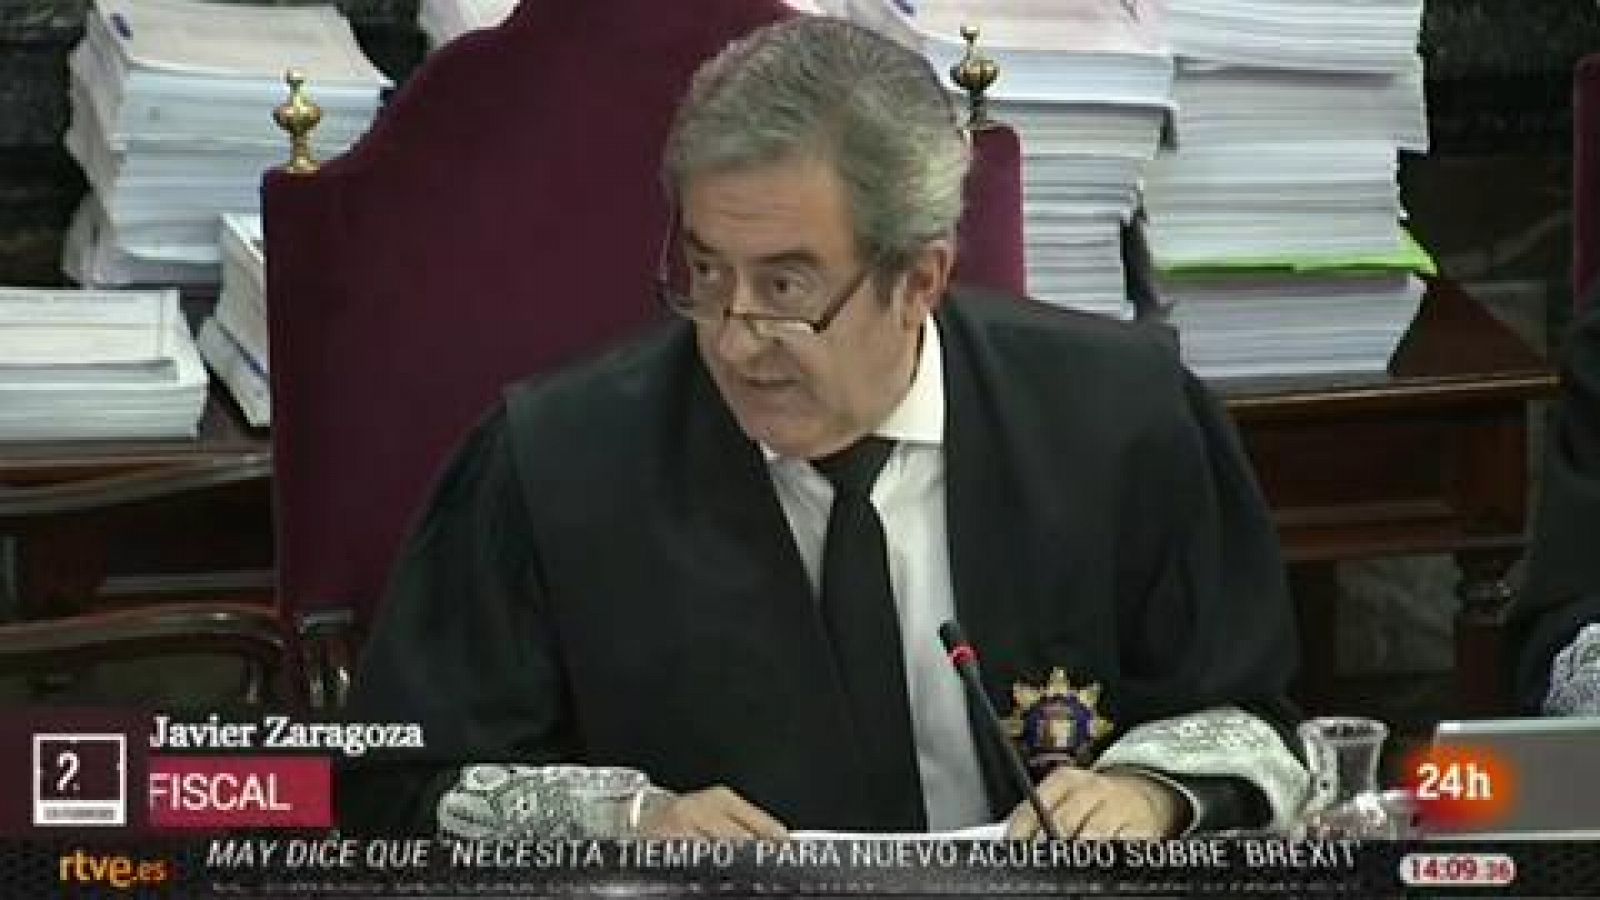 La Fiscalía: "Este es un juicio en defensa de la democracia española"